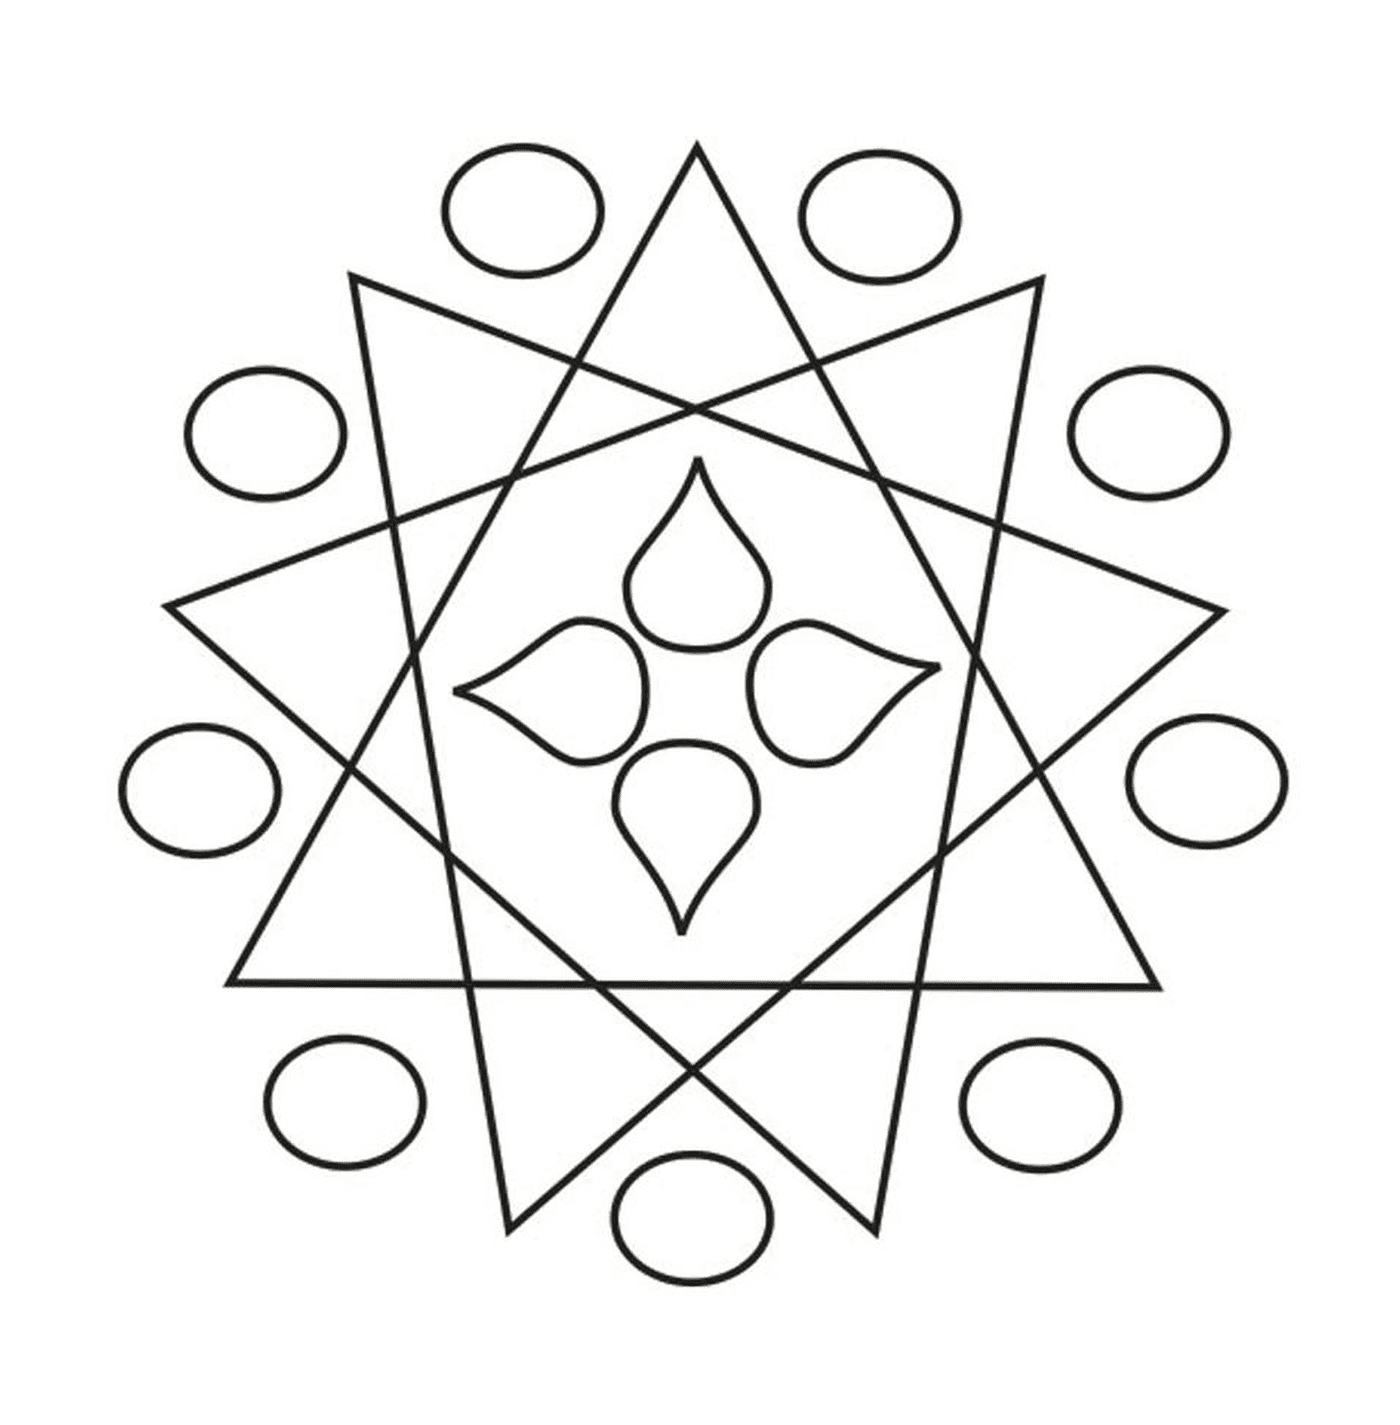  Eine geometrische Zeichnung 